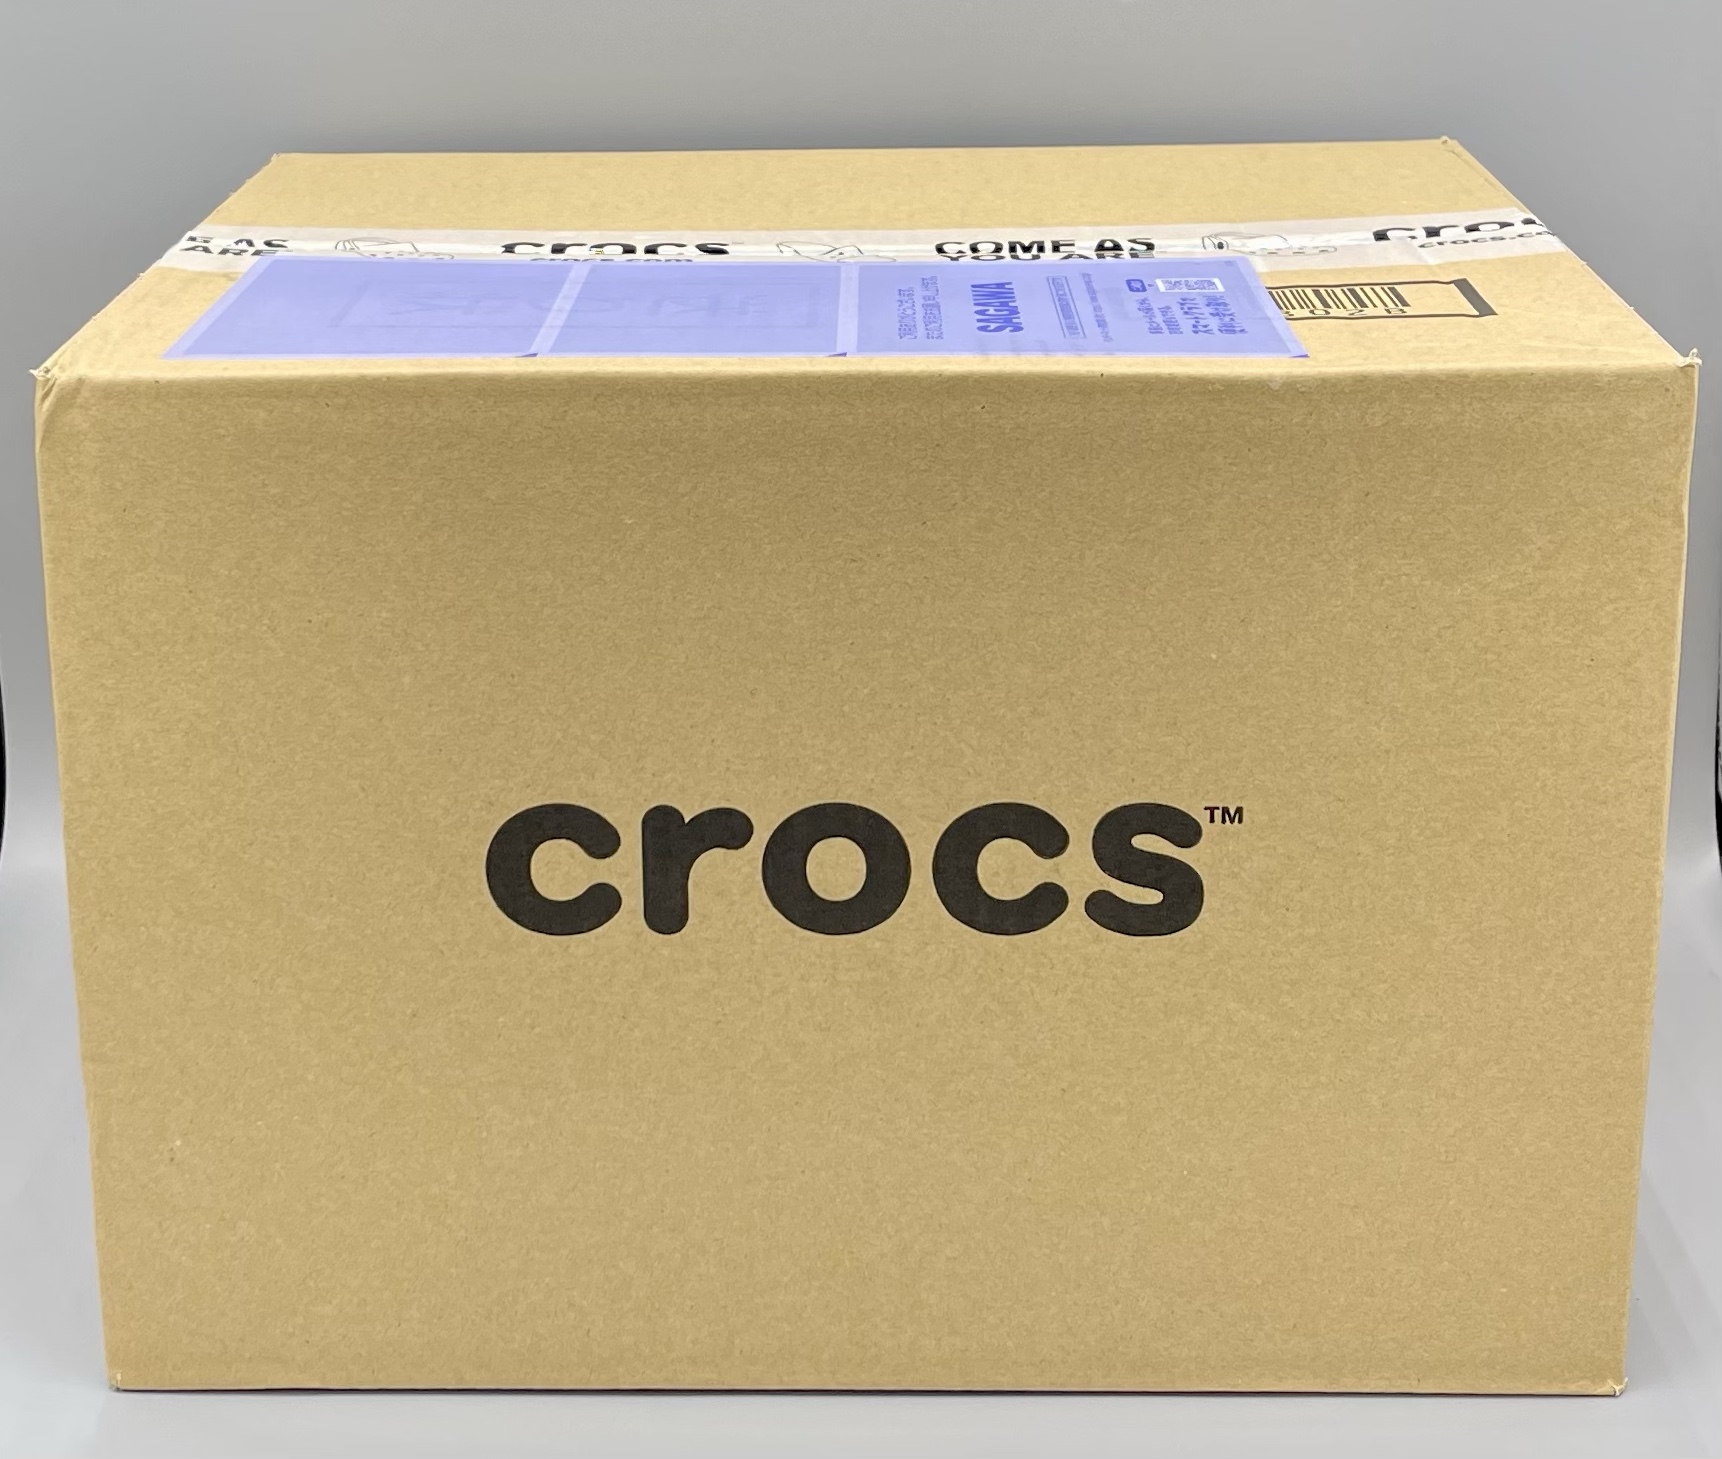 crocs(クロックス)の梱包